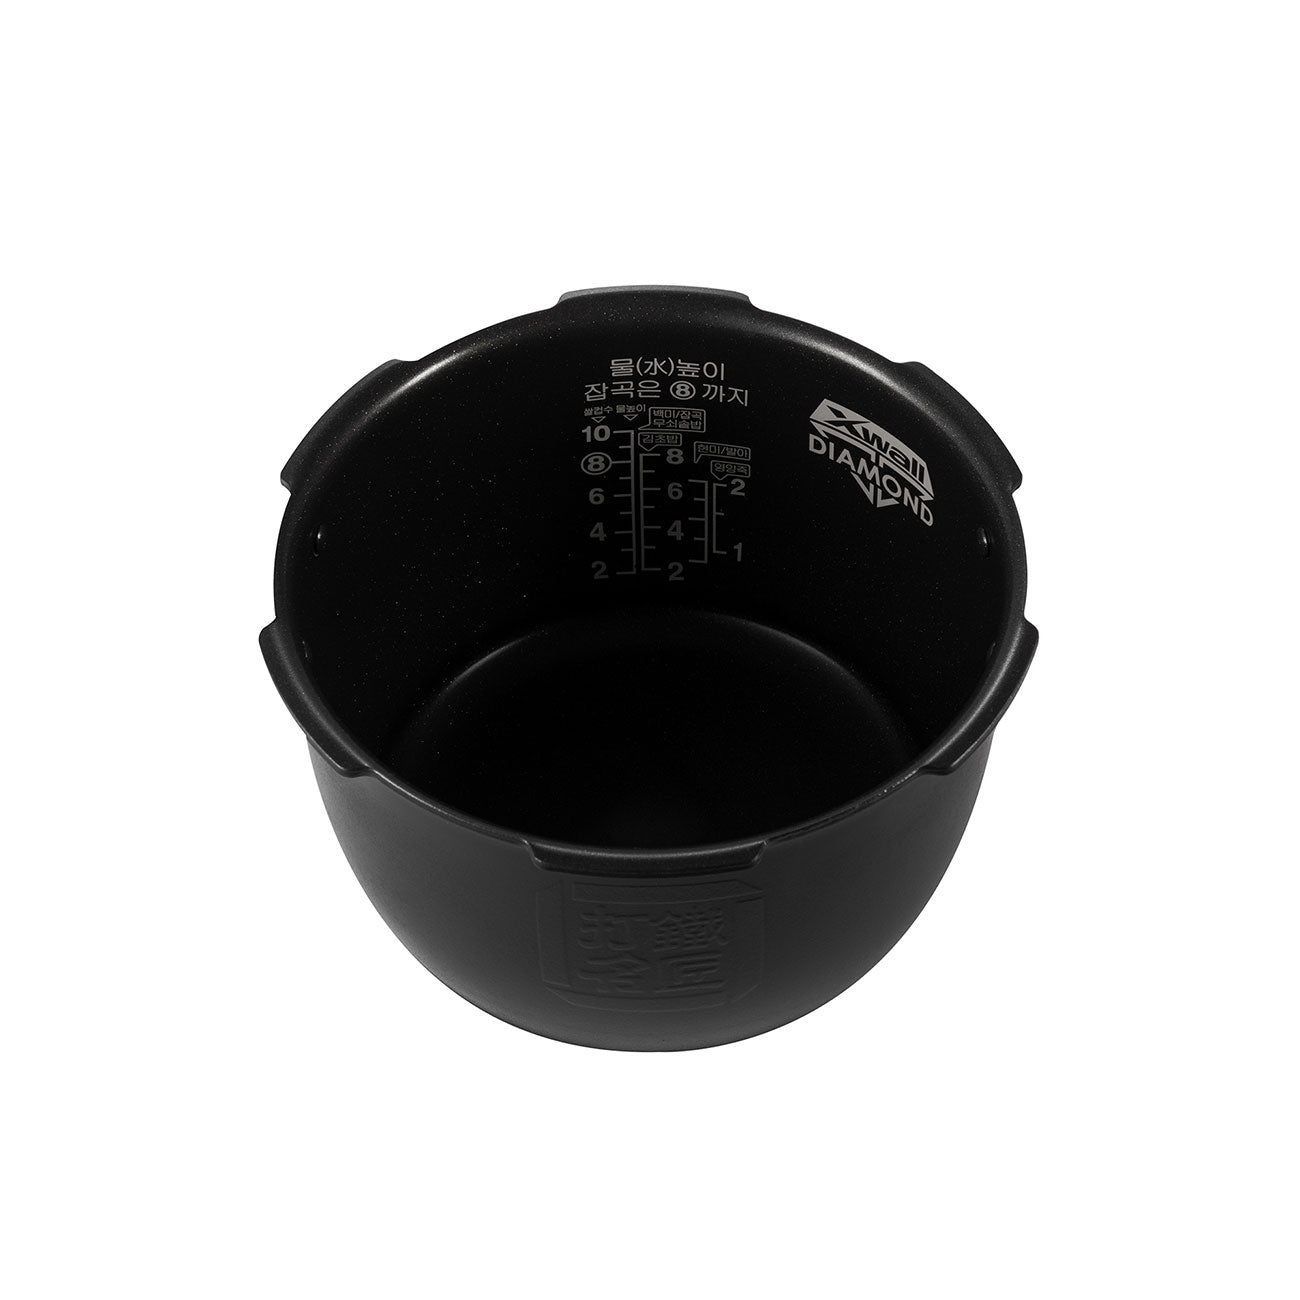 CUCKOO Inner Pot for CRP-MHTR0310FW CRP-MHTR0310FG Rice Cooker for 3Cups